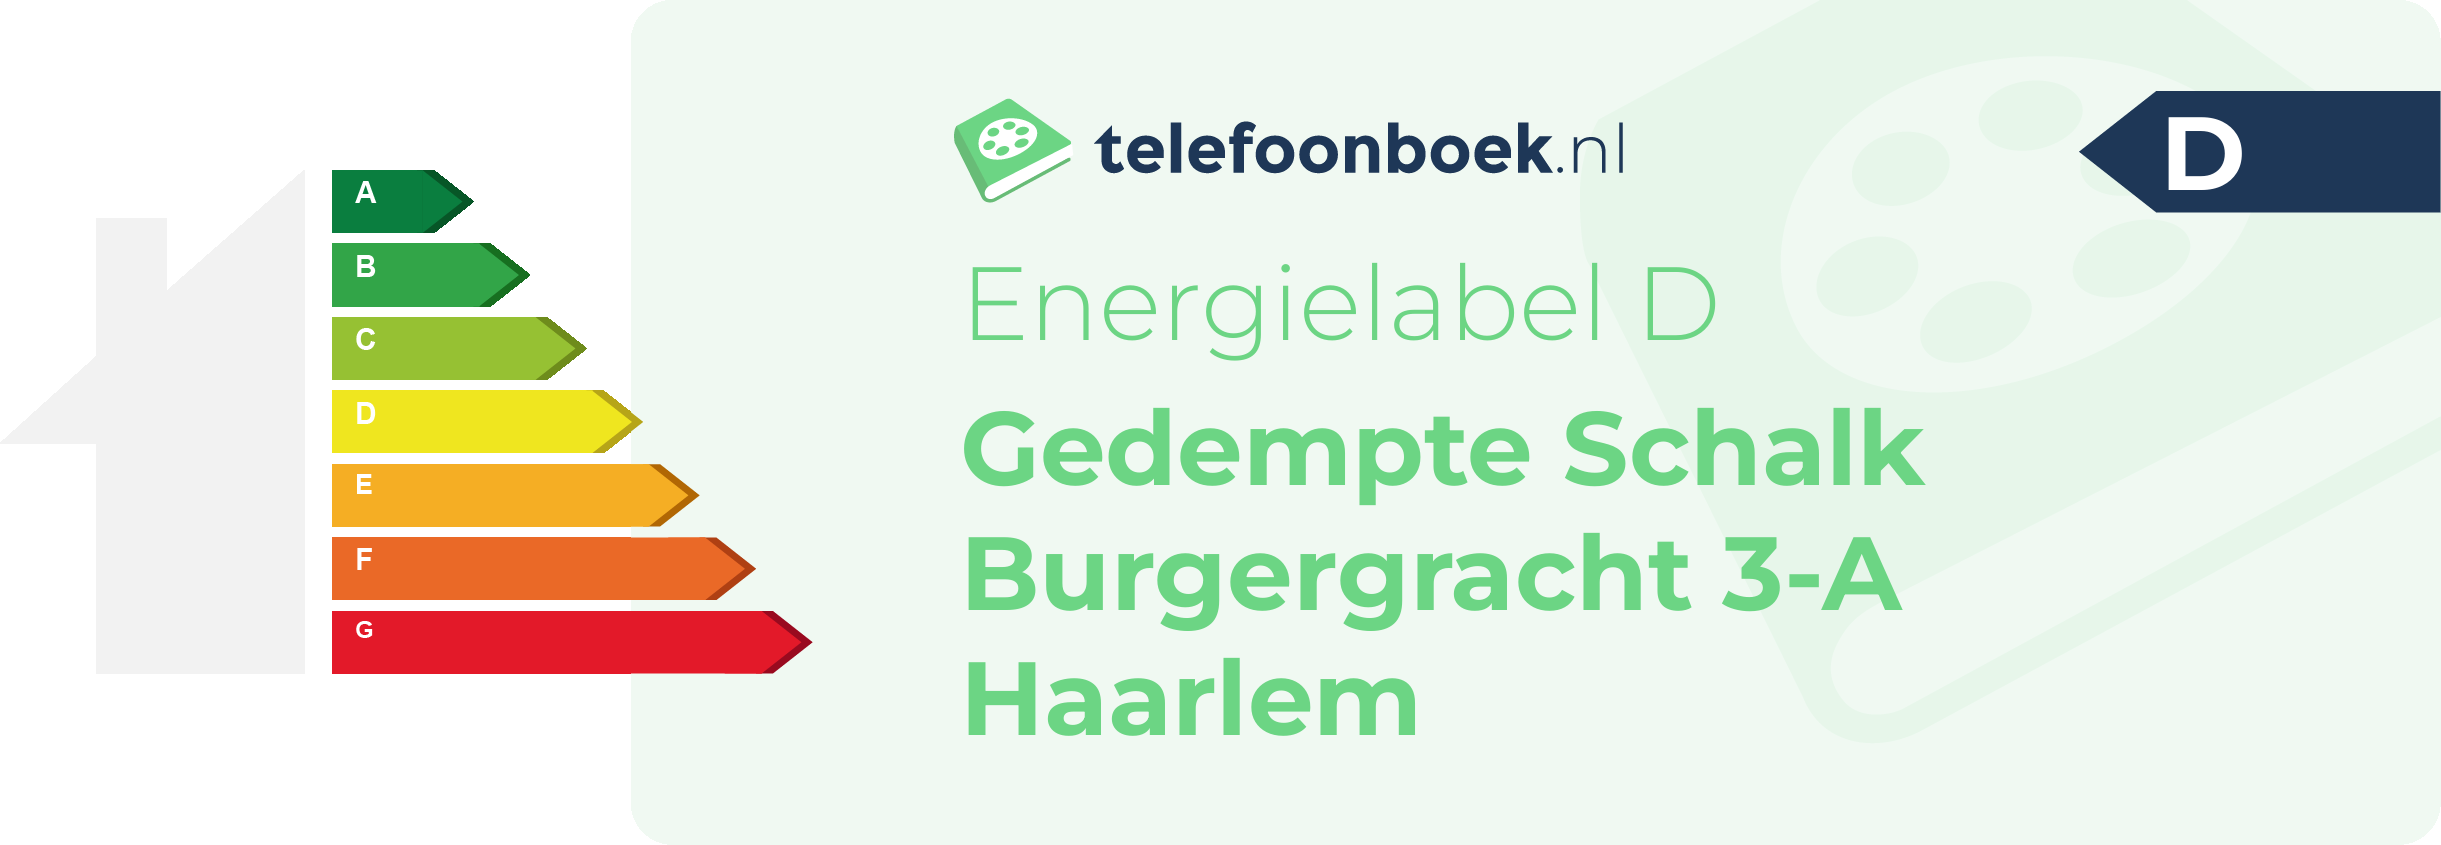 Energielabel Gedempte Schalk Burgergracht 3-A Haarlem